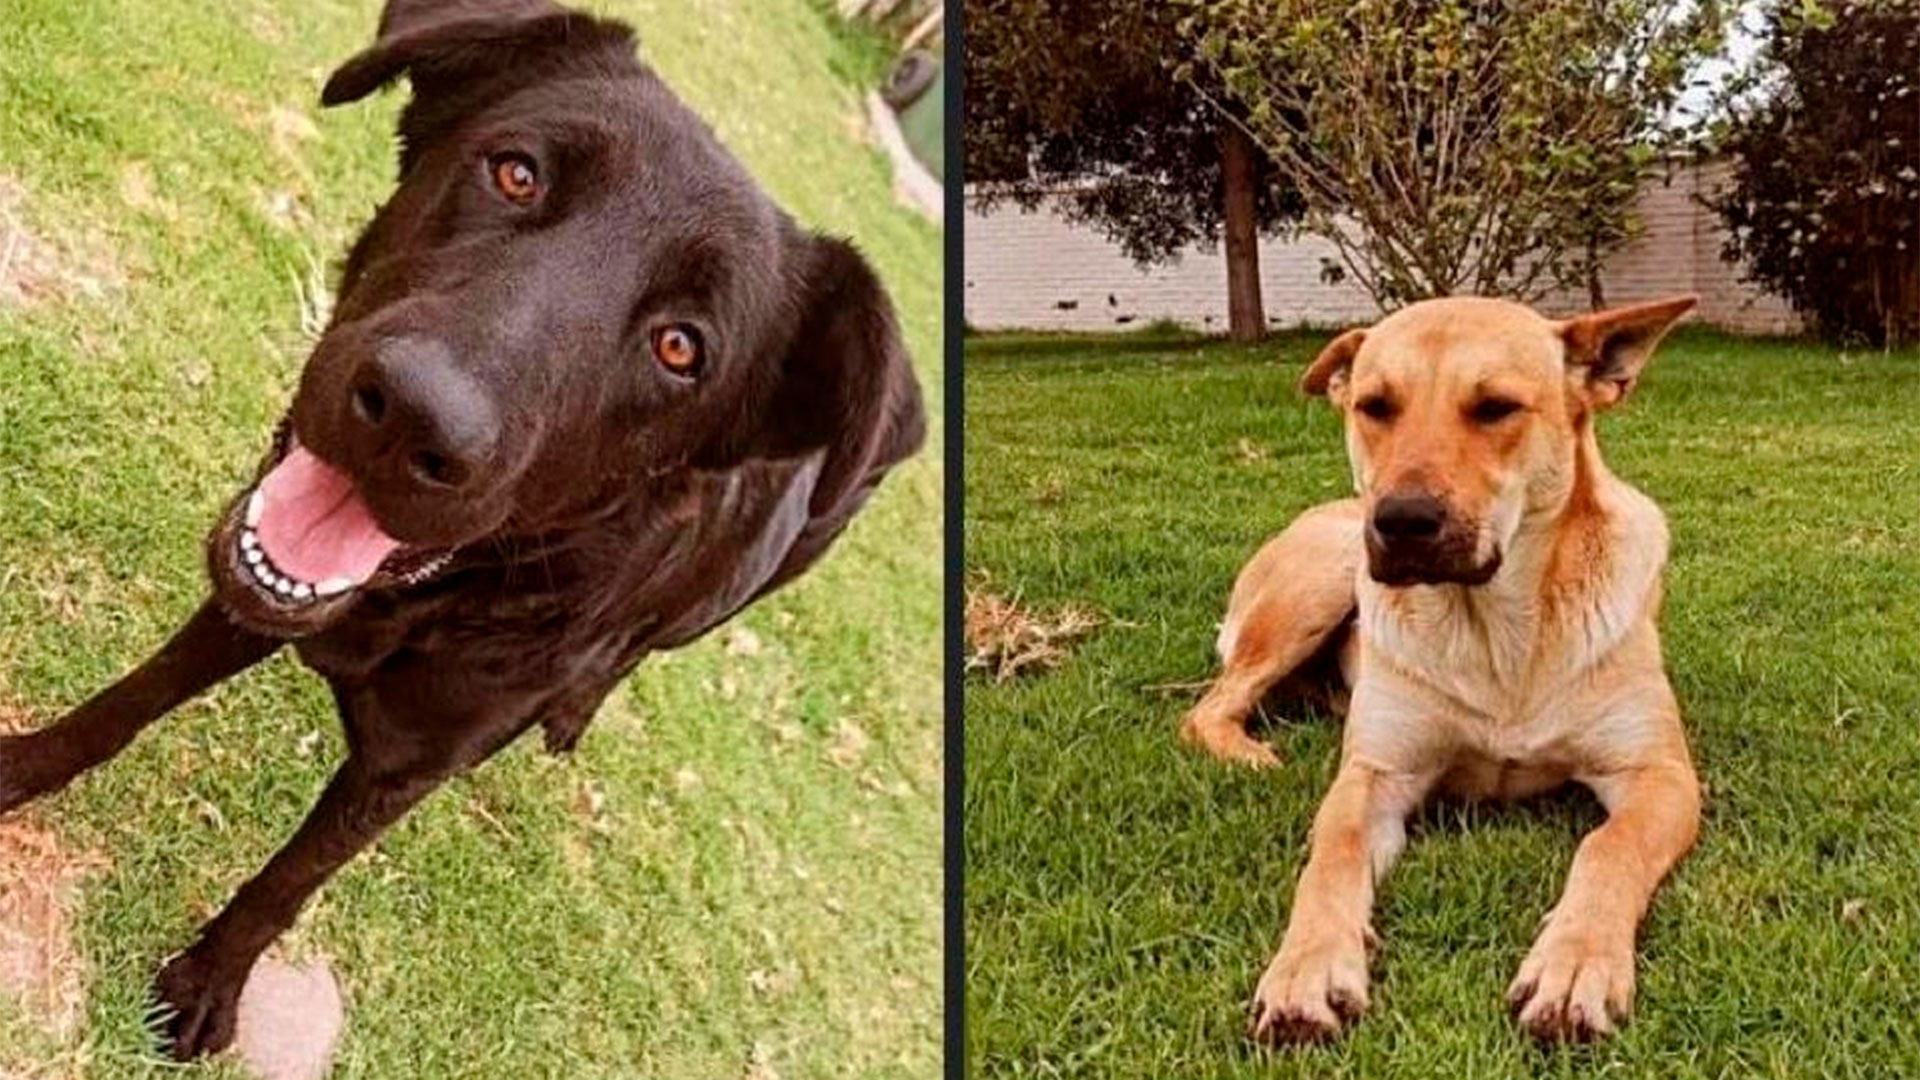 Docentes de una universidad chilena sacrificaron a dos perros para una clase de anatomía: los involucrados fueron despedidos